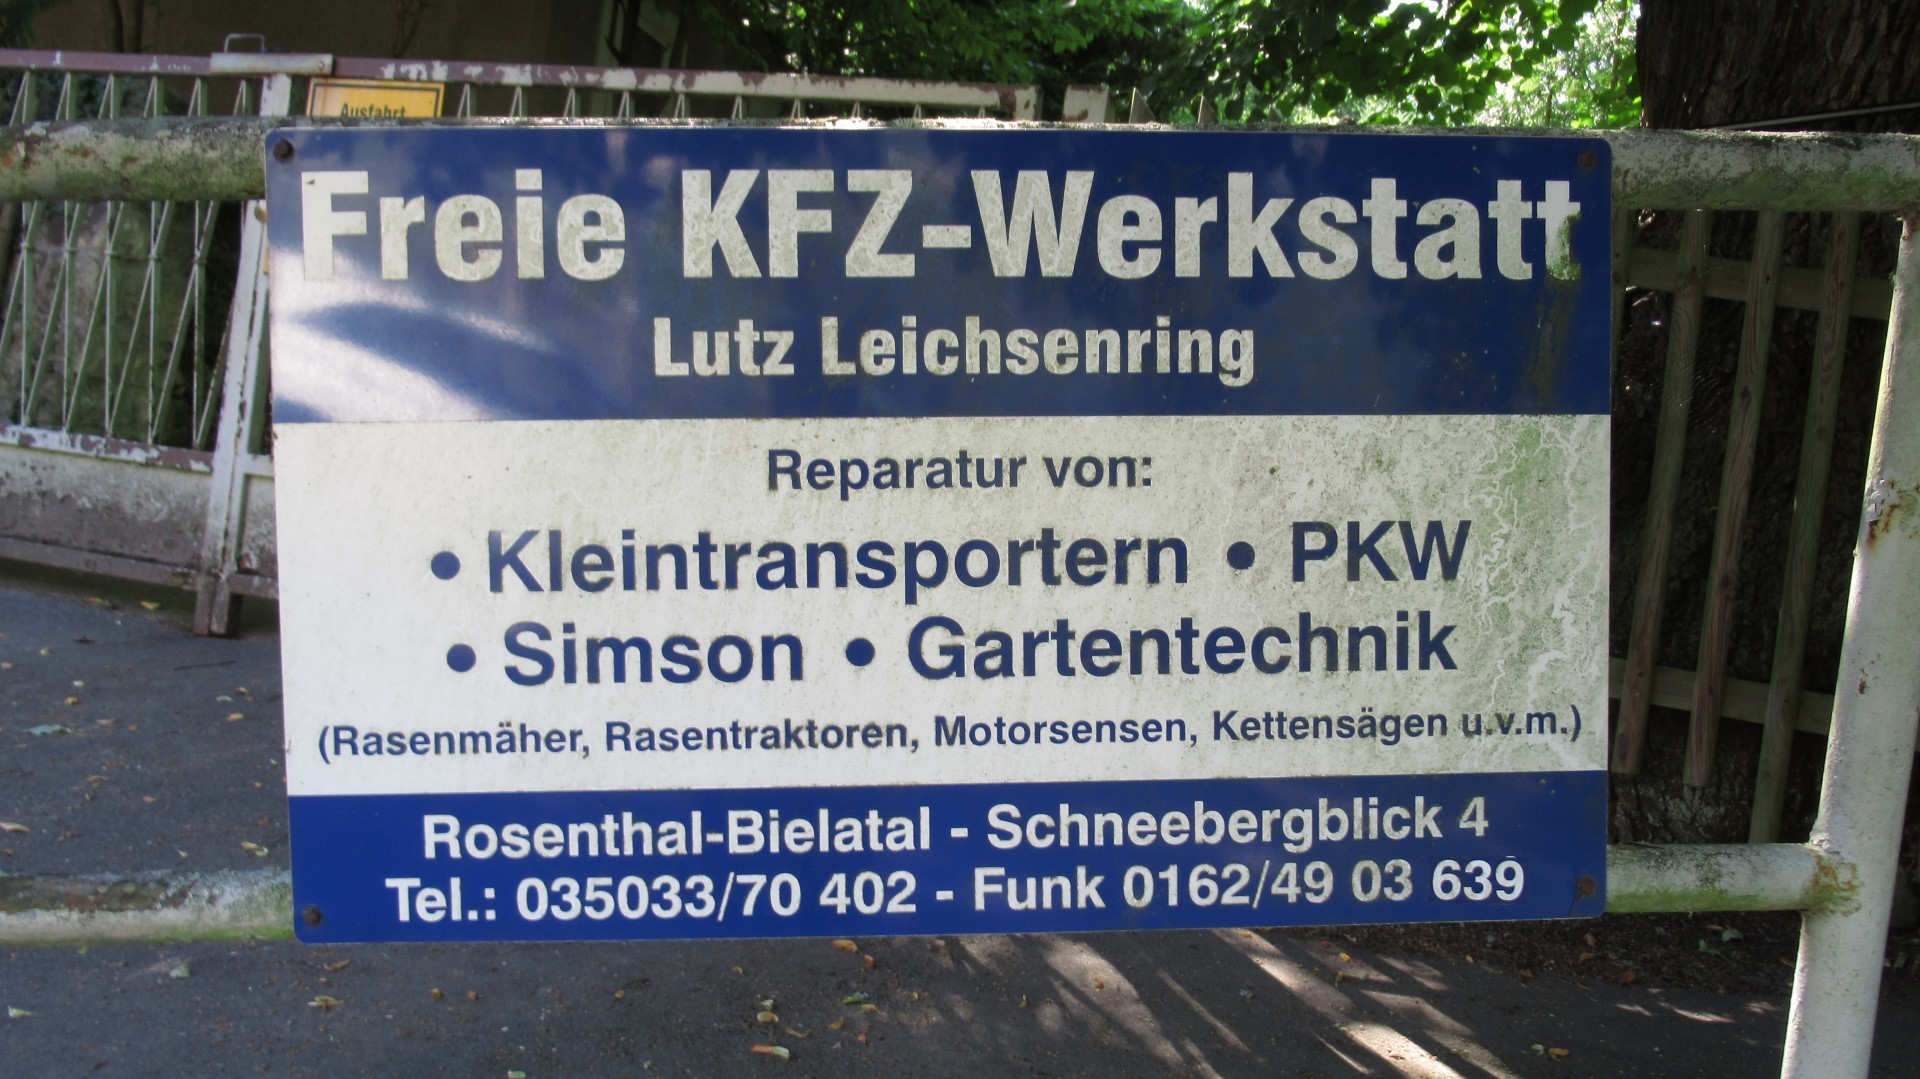 Bild 1 Freie KFZ Werkstatt Inh. Lutz Leichsenring in Rosenthal-Bielatal